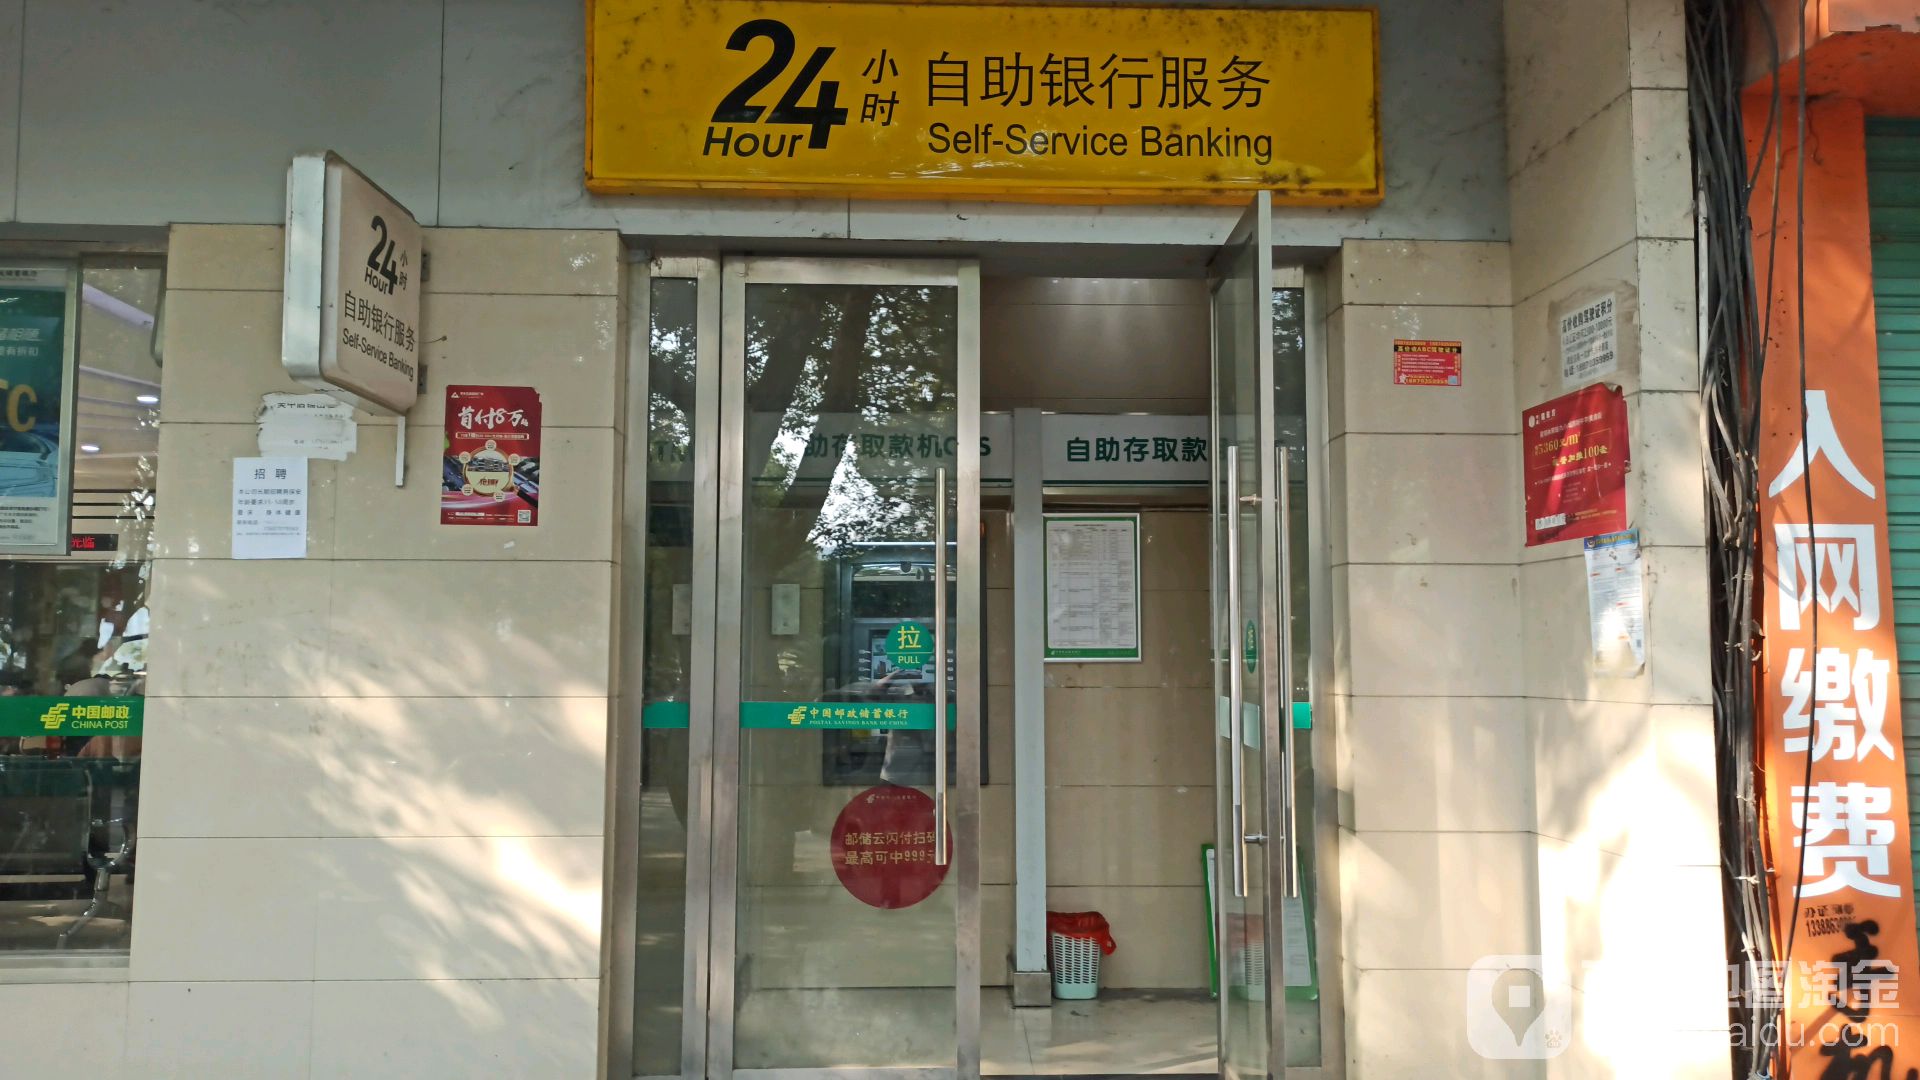 中国邮政储运银行24小时自助银行(沿河西路营业所)